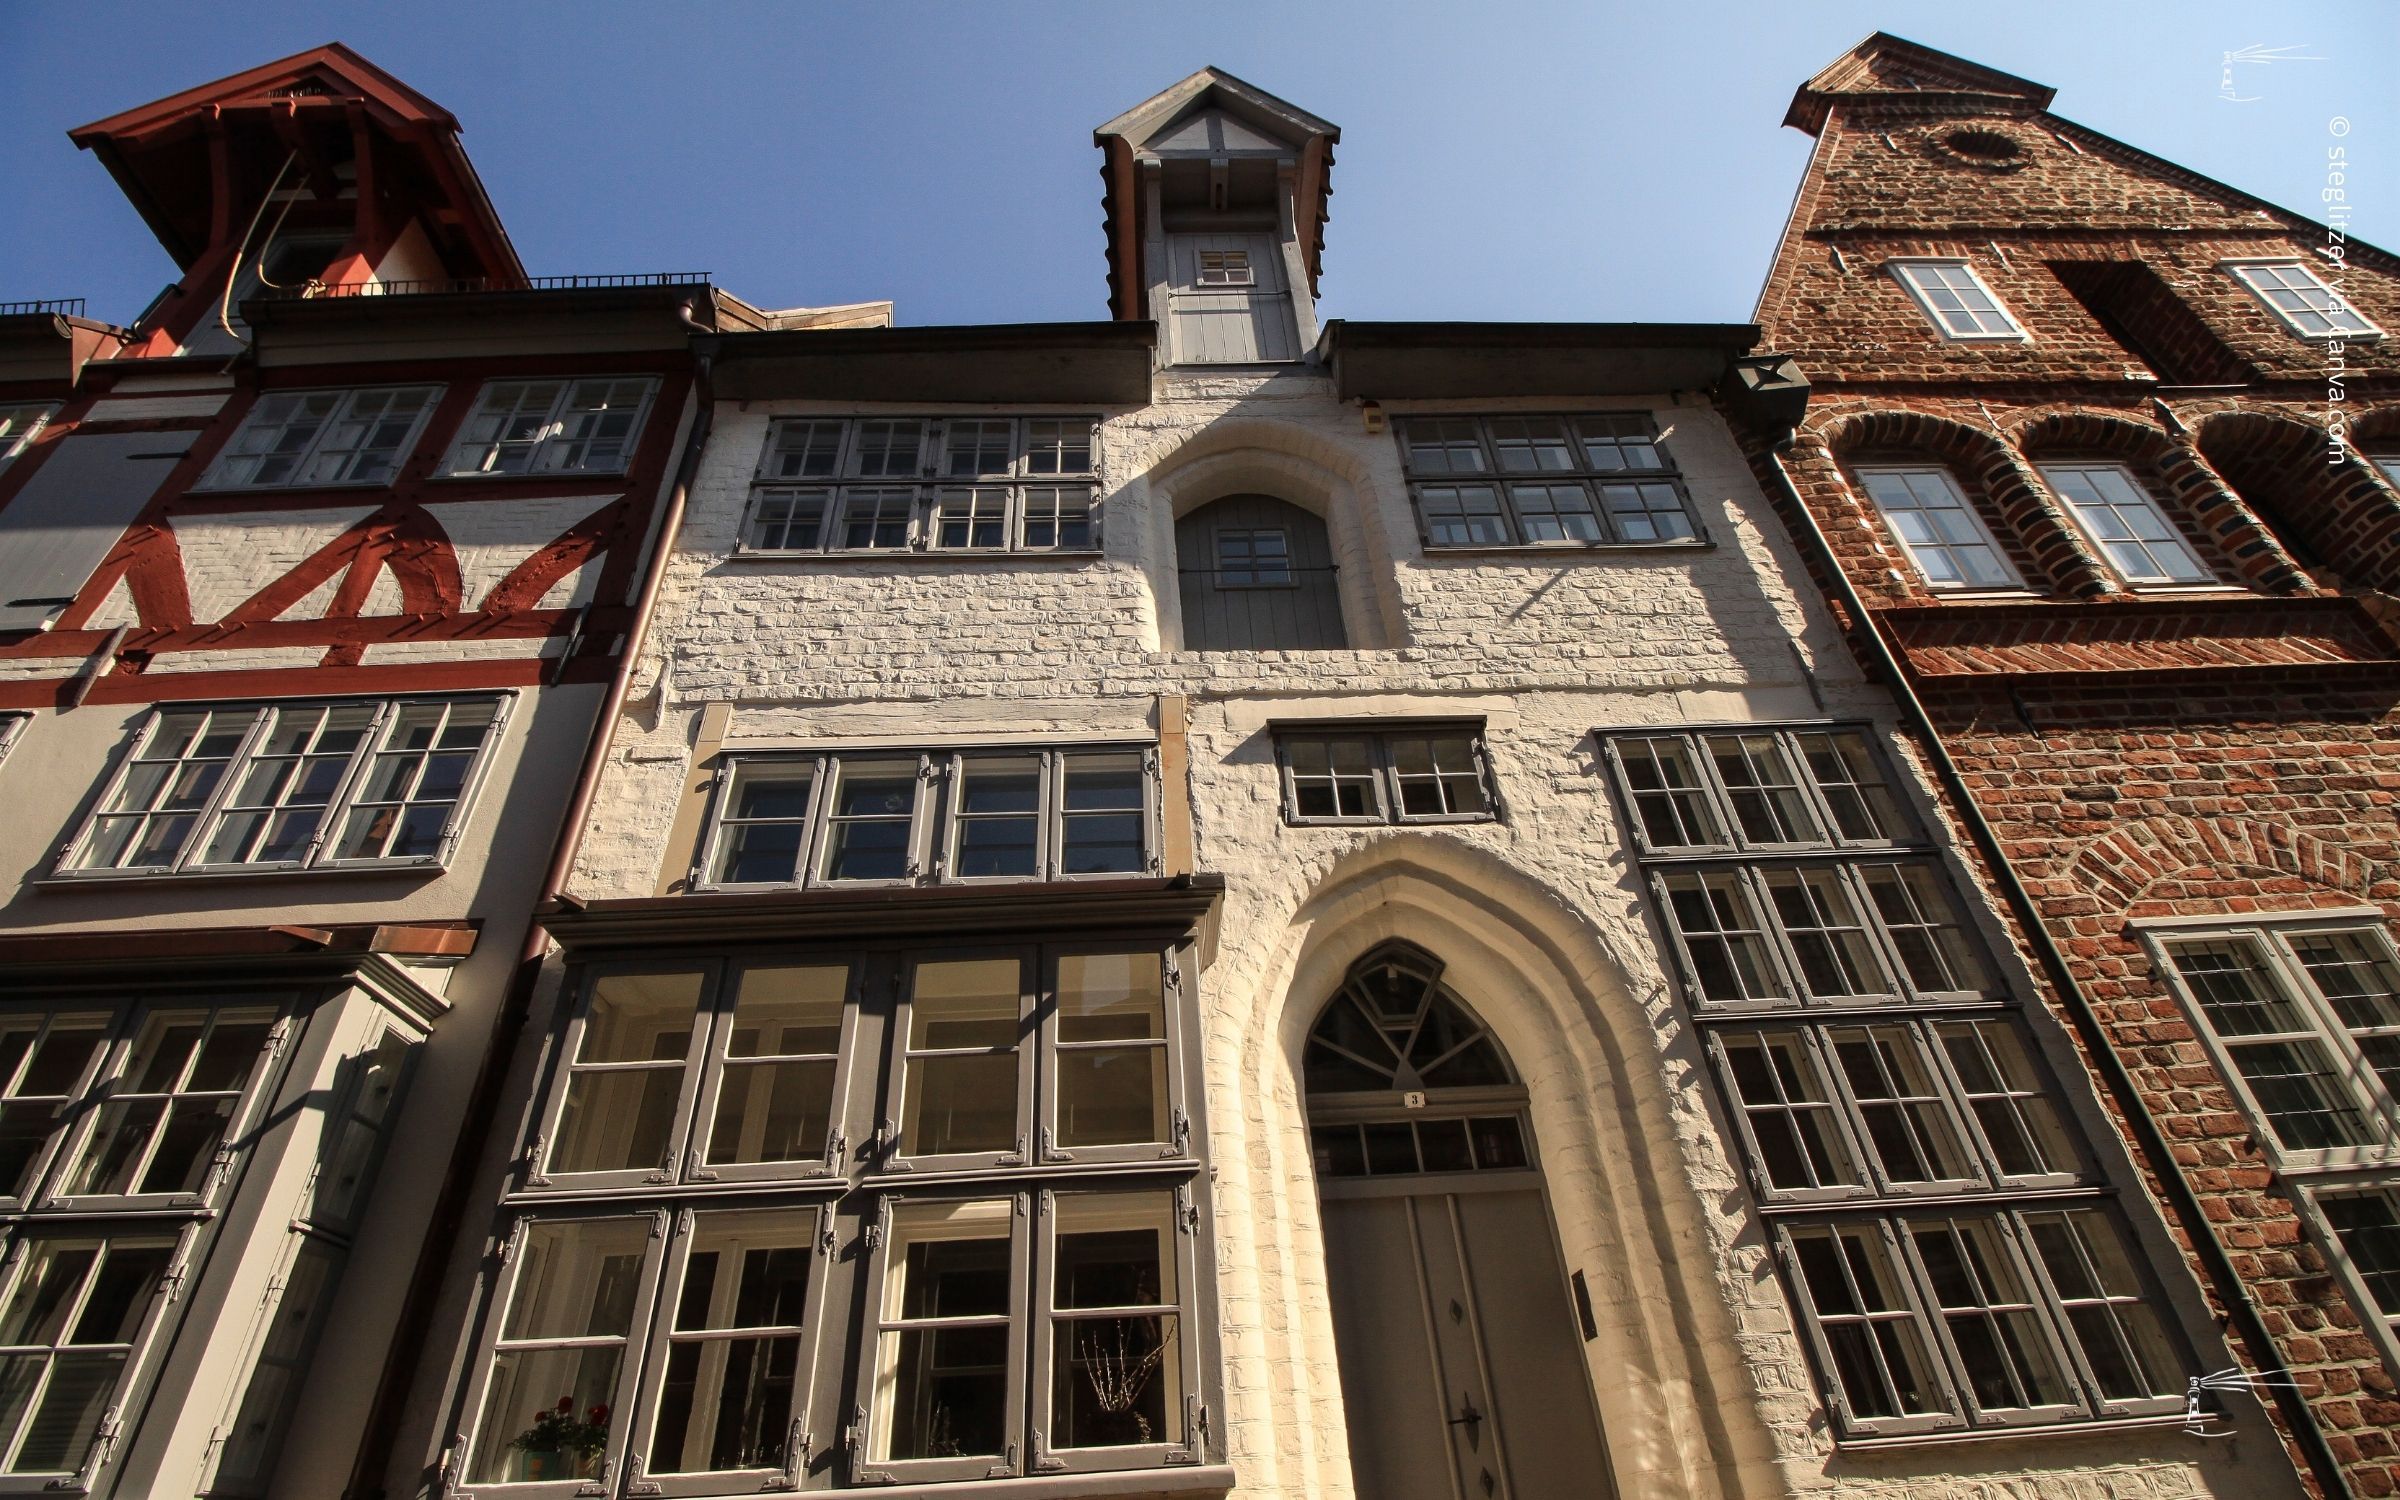 Die Fassade traditioneller europäischer Gebäude mit unterschiedlichen Architekturstilen und Fensterdesigns, aus einem niedrigen Winkel vor einem klaren blauen Himmel betrachtet, spiegelt Leichtigkeit wider.